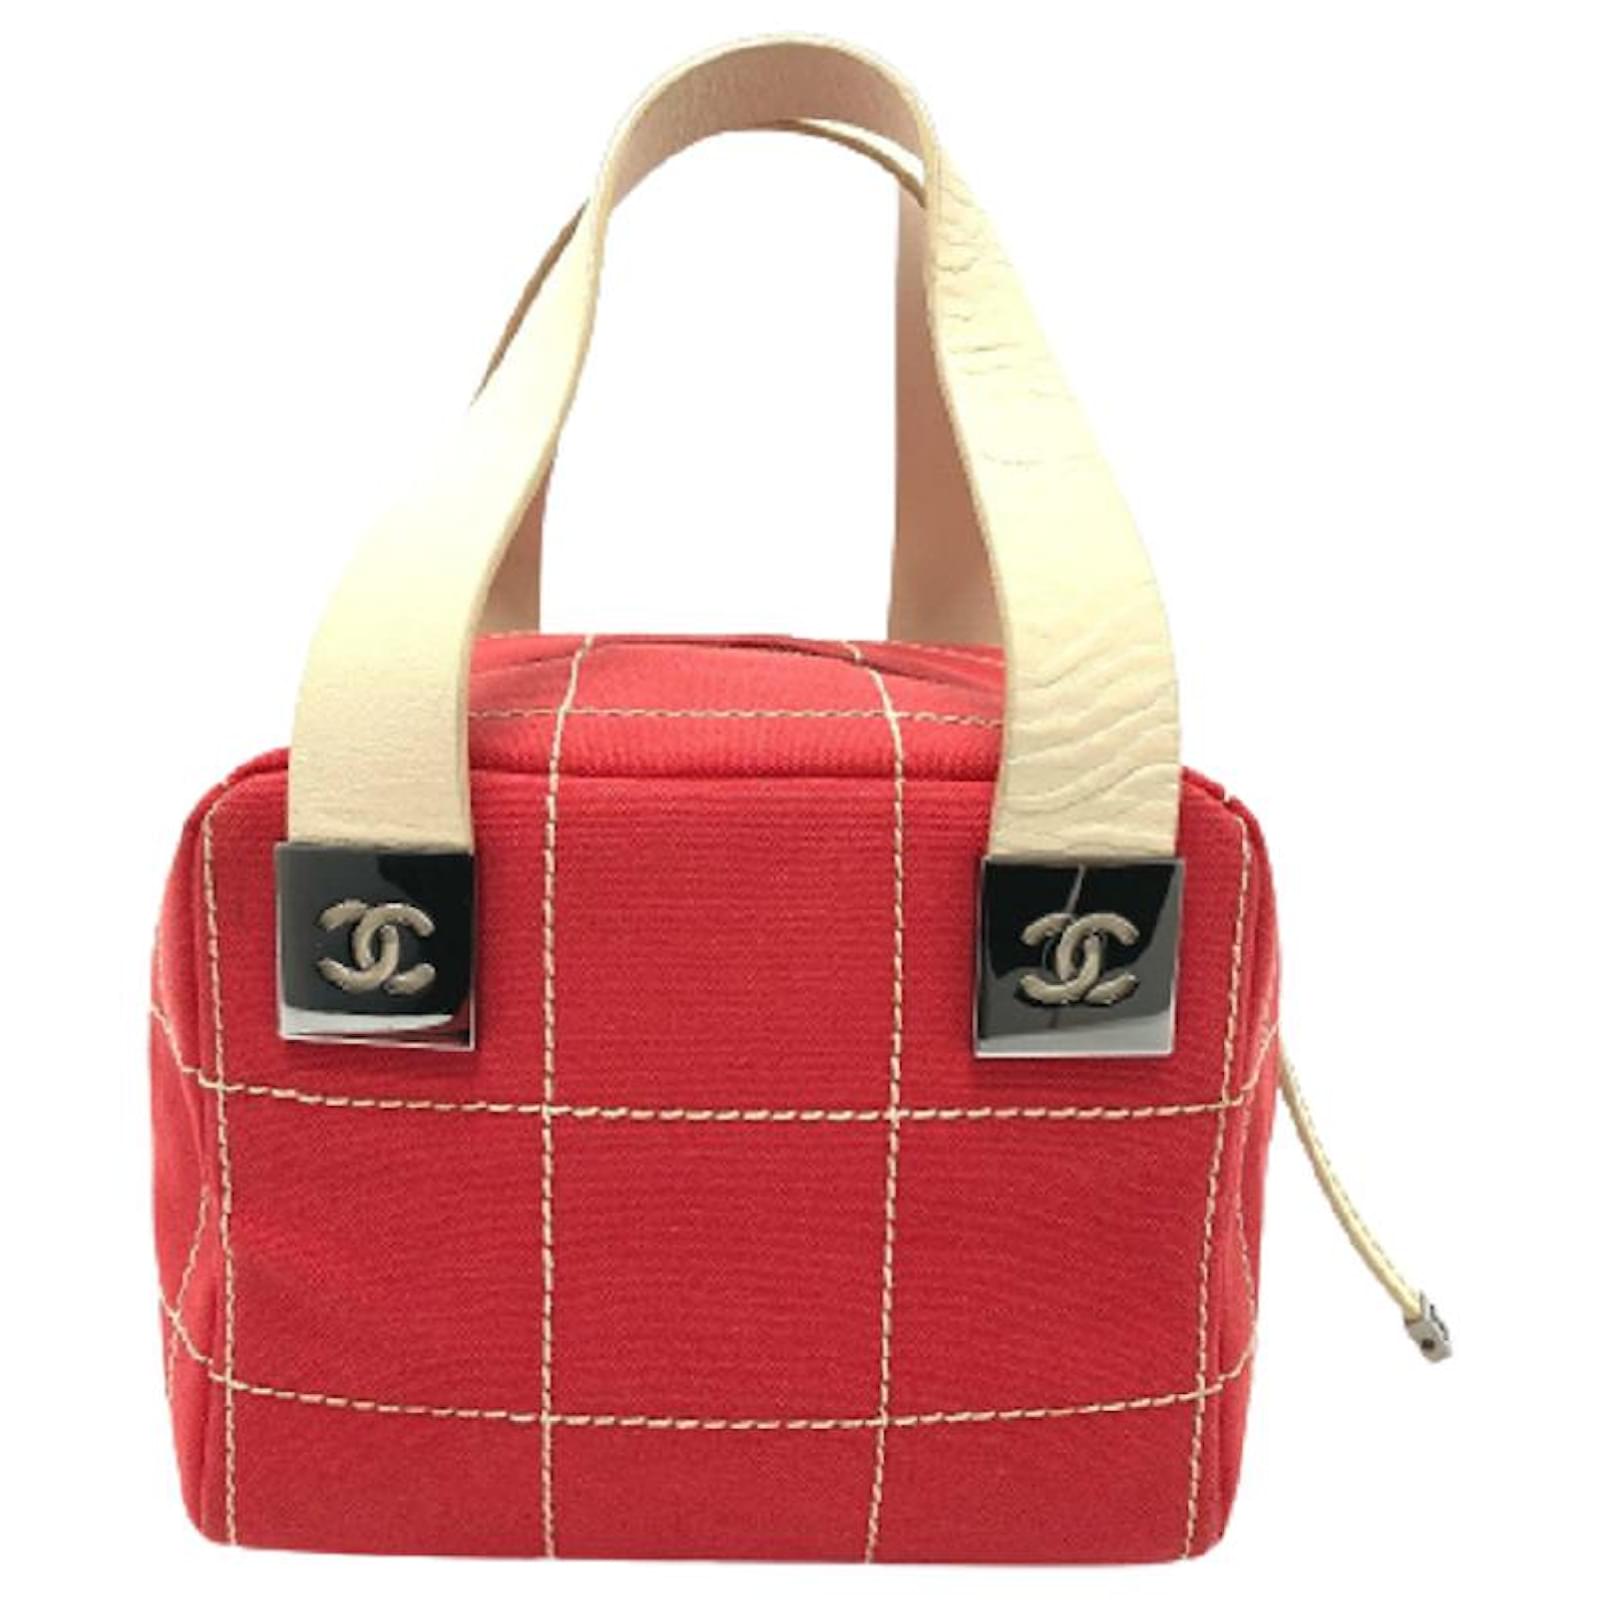 Square bag cloth handbag